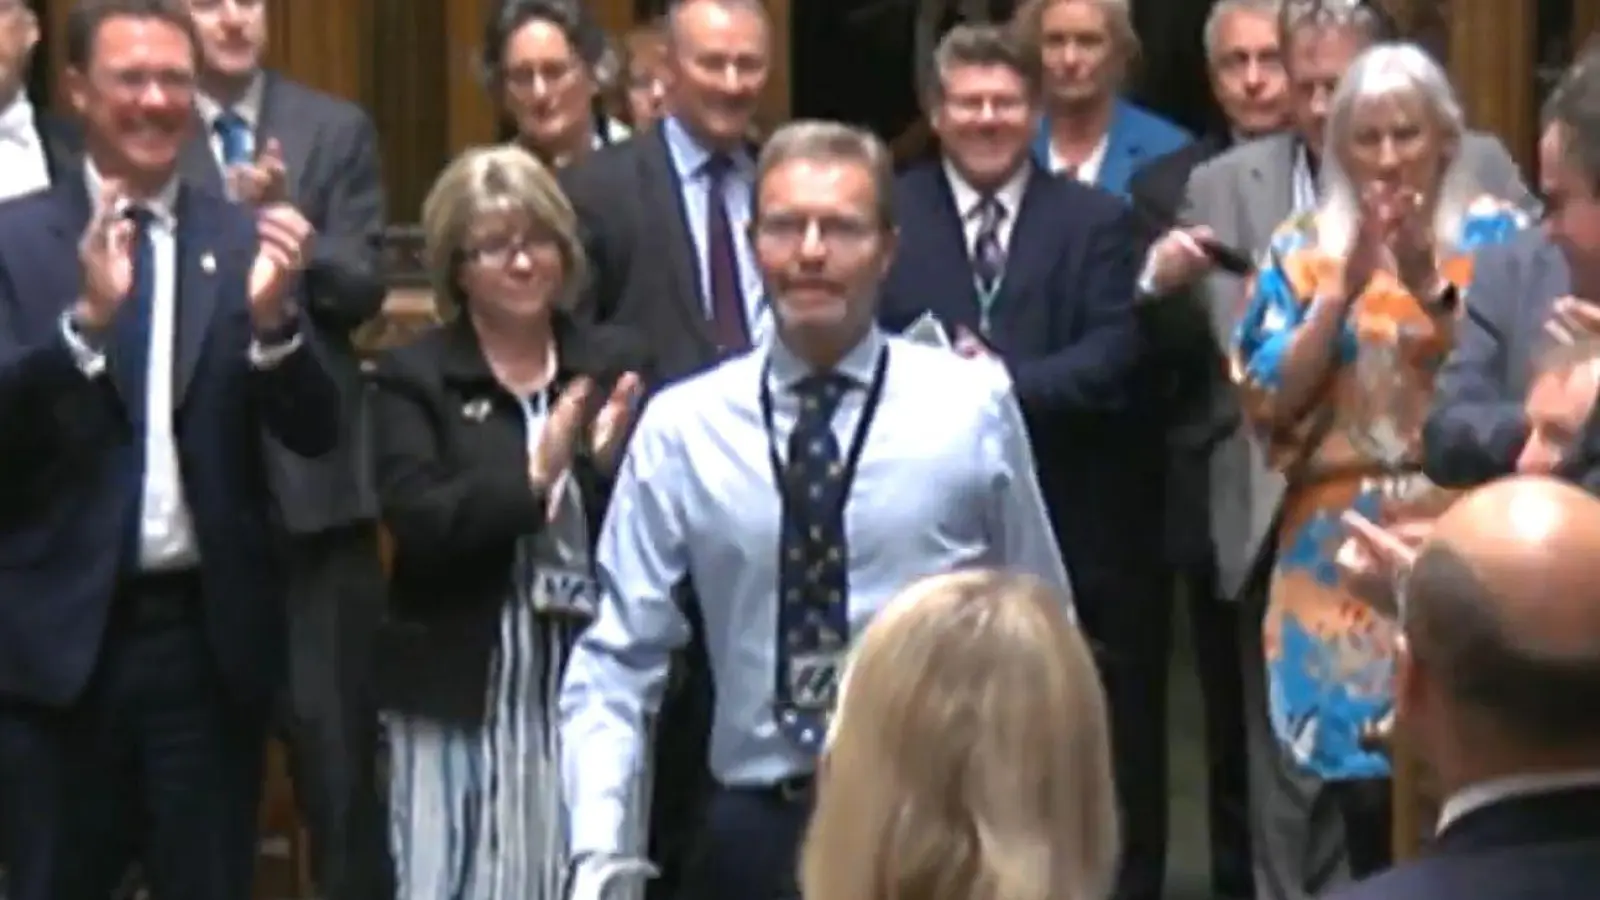 Der konservative Abgeordente Craig Mackinlay (m.) wird bei seiner Rückkehr von den Mitgliedern des Parlaments beklatscht. (Foto: House Of Commons/Uk Parliament/PA Wire/dpa)